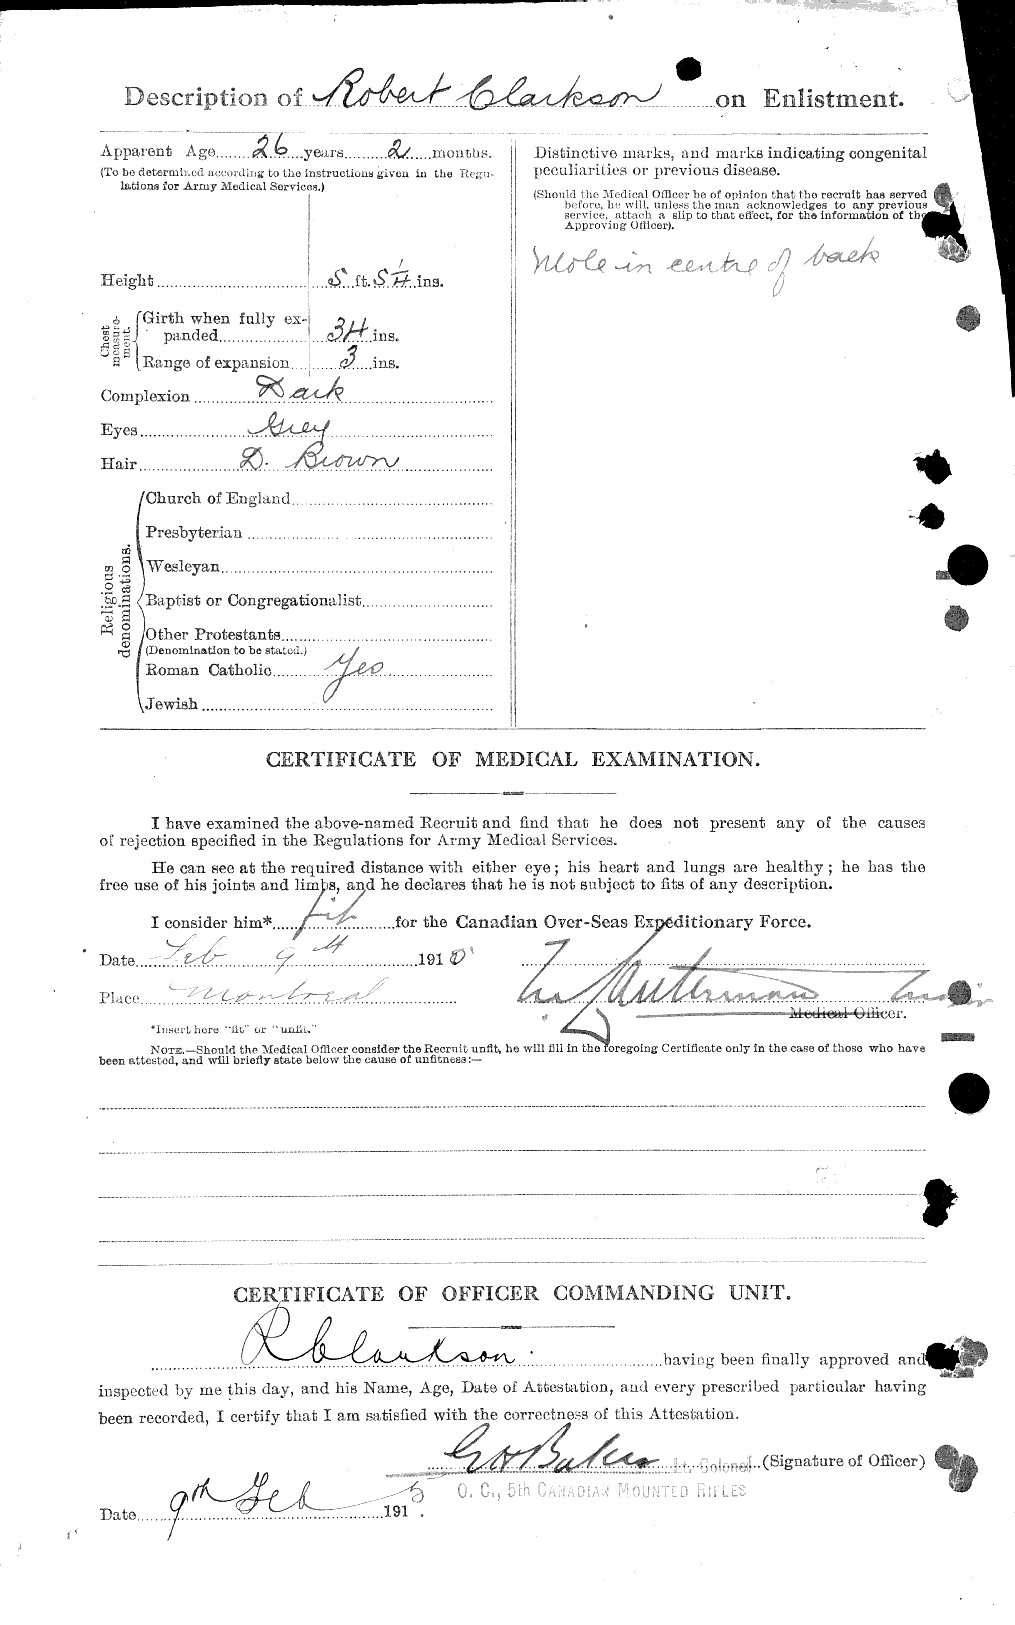 Dossiers du Personnel de la Première Guerre mondiale - CEC 019001b